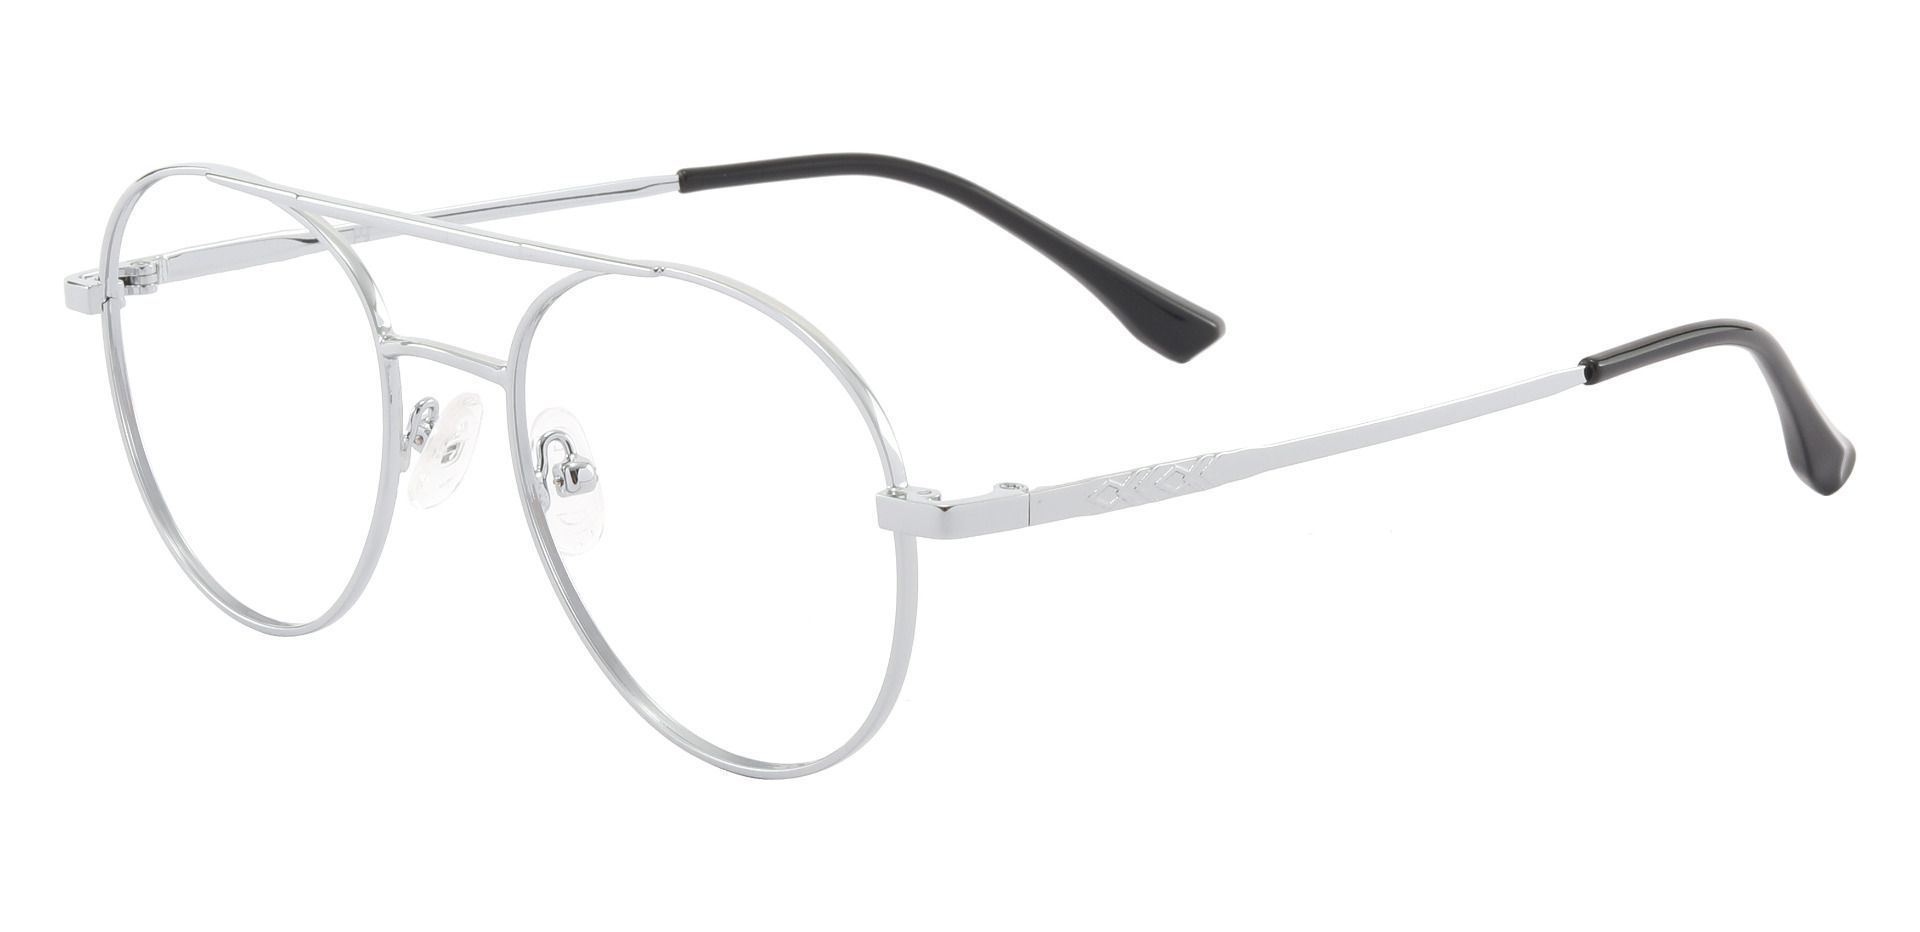 Cresson Aviator Prescription Glasses - Silver